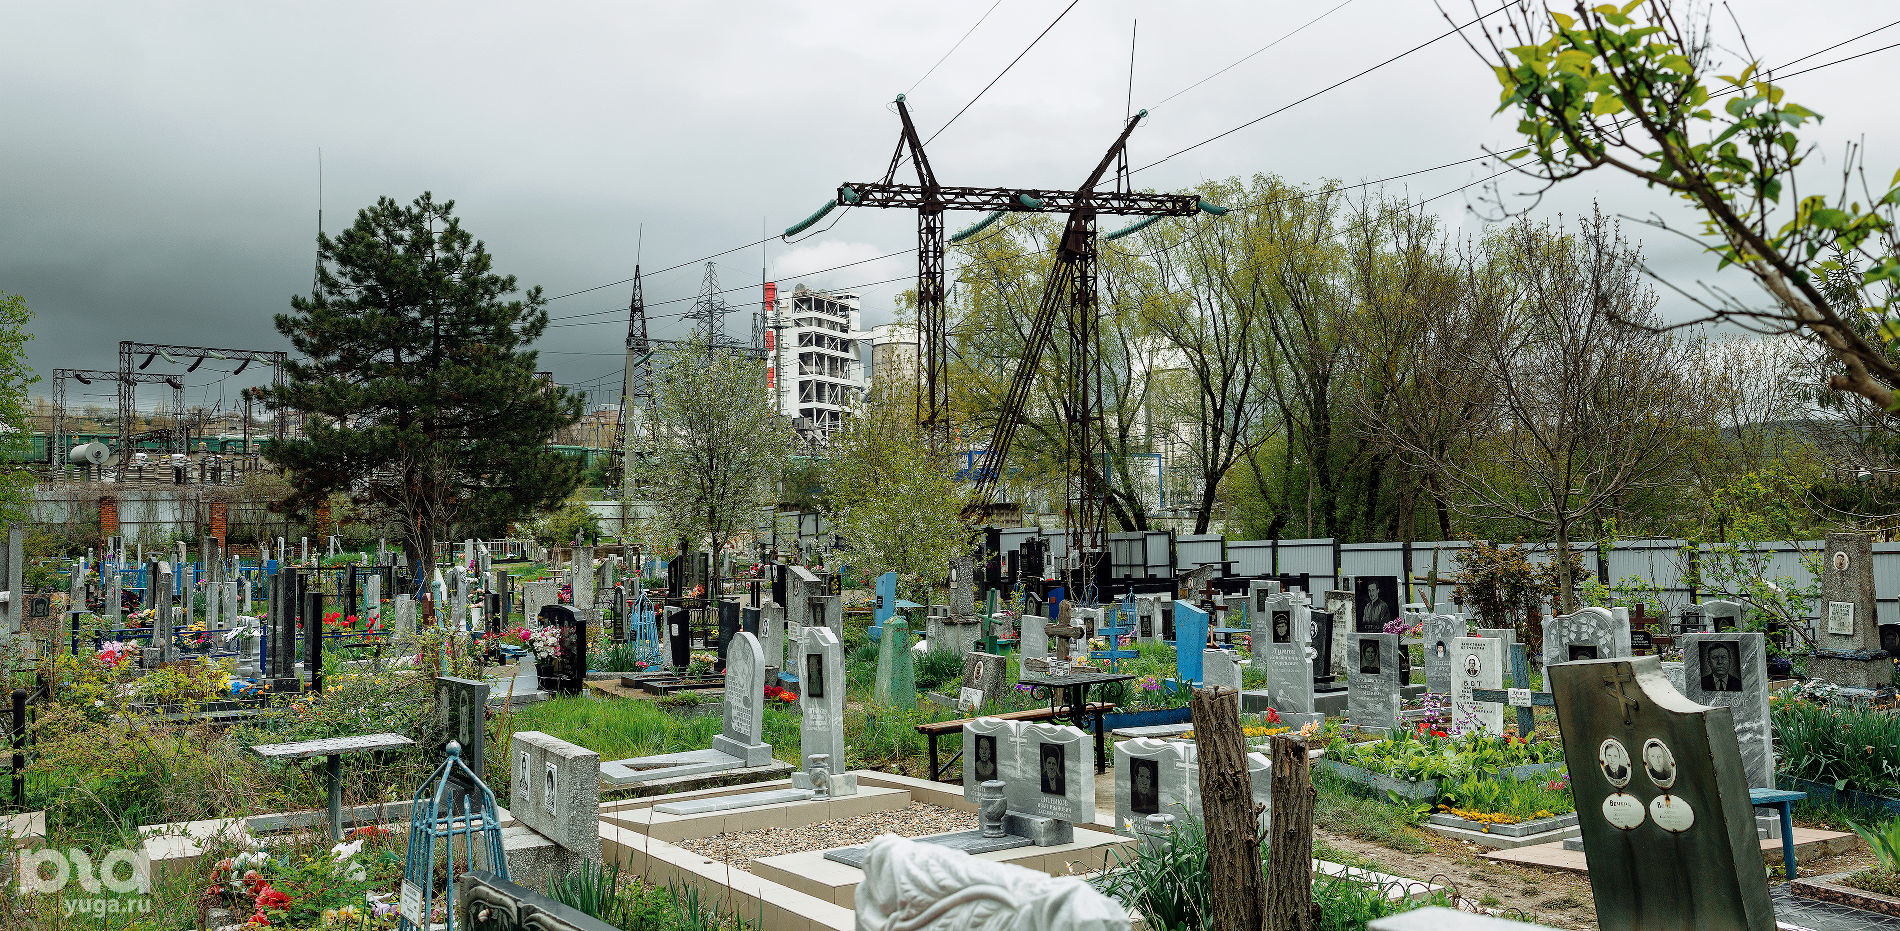 Верхнебаканское кладбище © Фото Юли Шафаростовой, Юга.ру